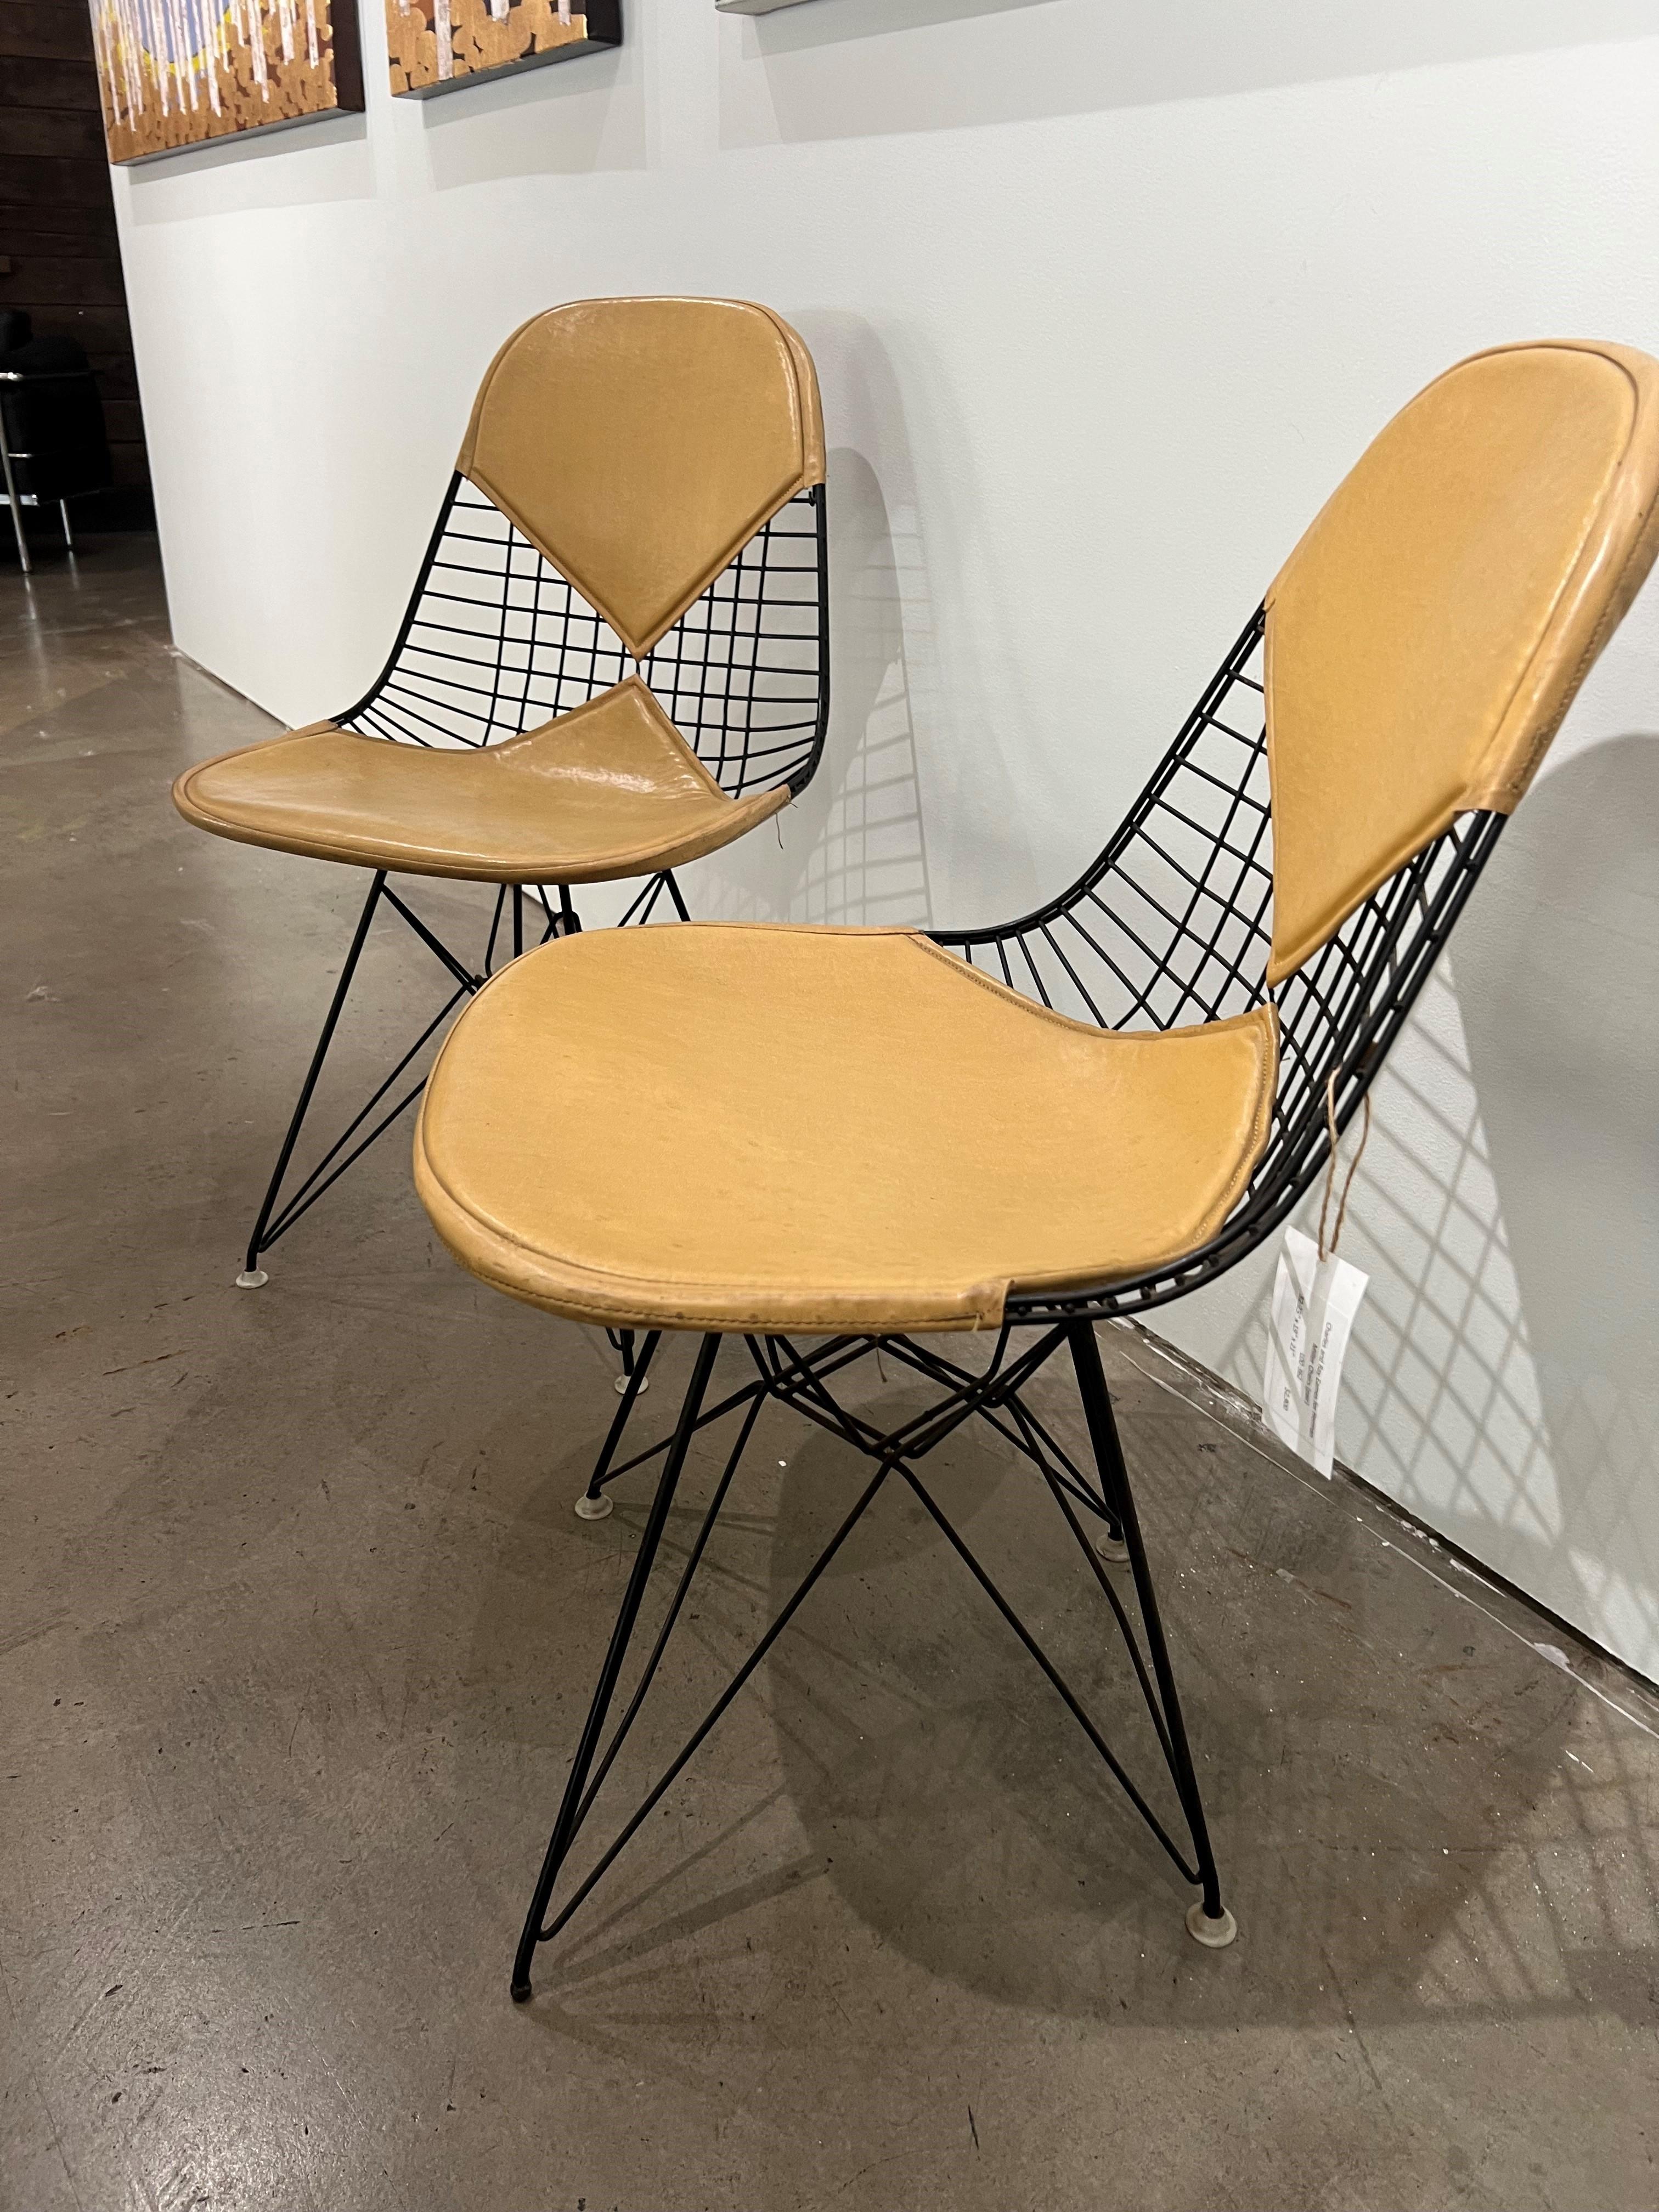 Entrez dans le monde du design intemporel avec les créations emblématiques de Charles et Ray Eames pour les chaises Herman Miller. Réputés pour leur approche innovante, les Eames ont révolutionné le concept de siège, alliant fonctionnalité, confort